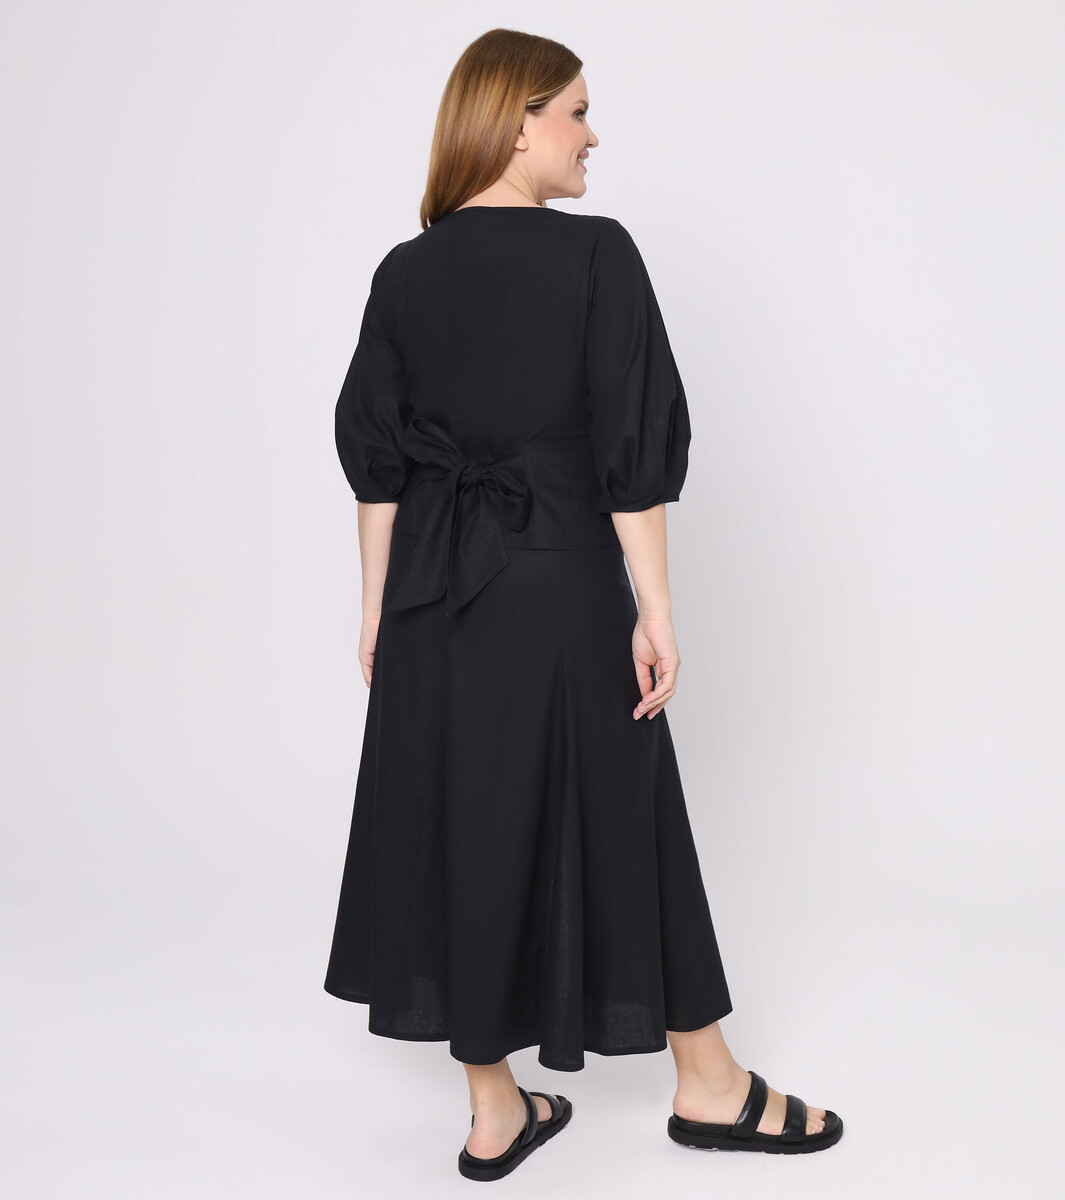 Комплект женский (блузка, юбка) Panda, размер 46, цвет черный 02949447 - фото 2